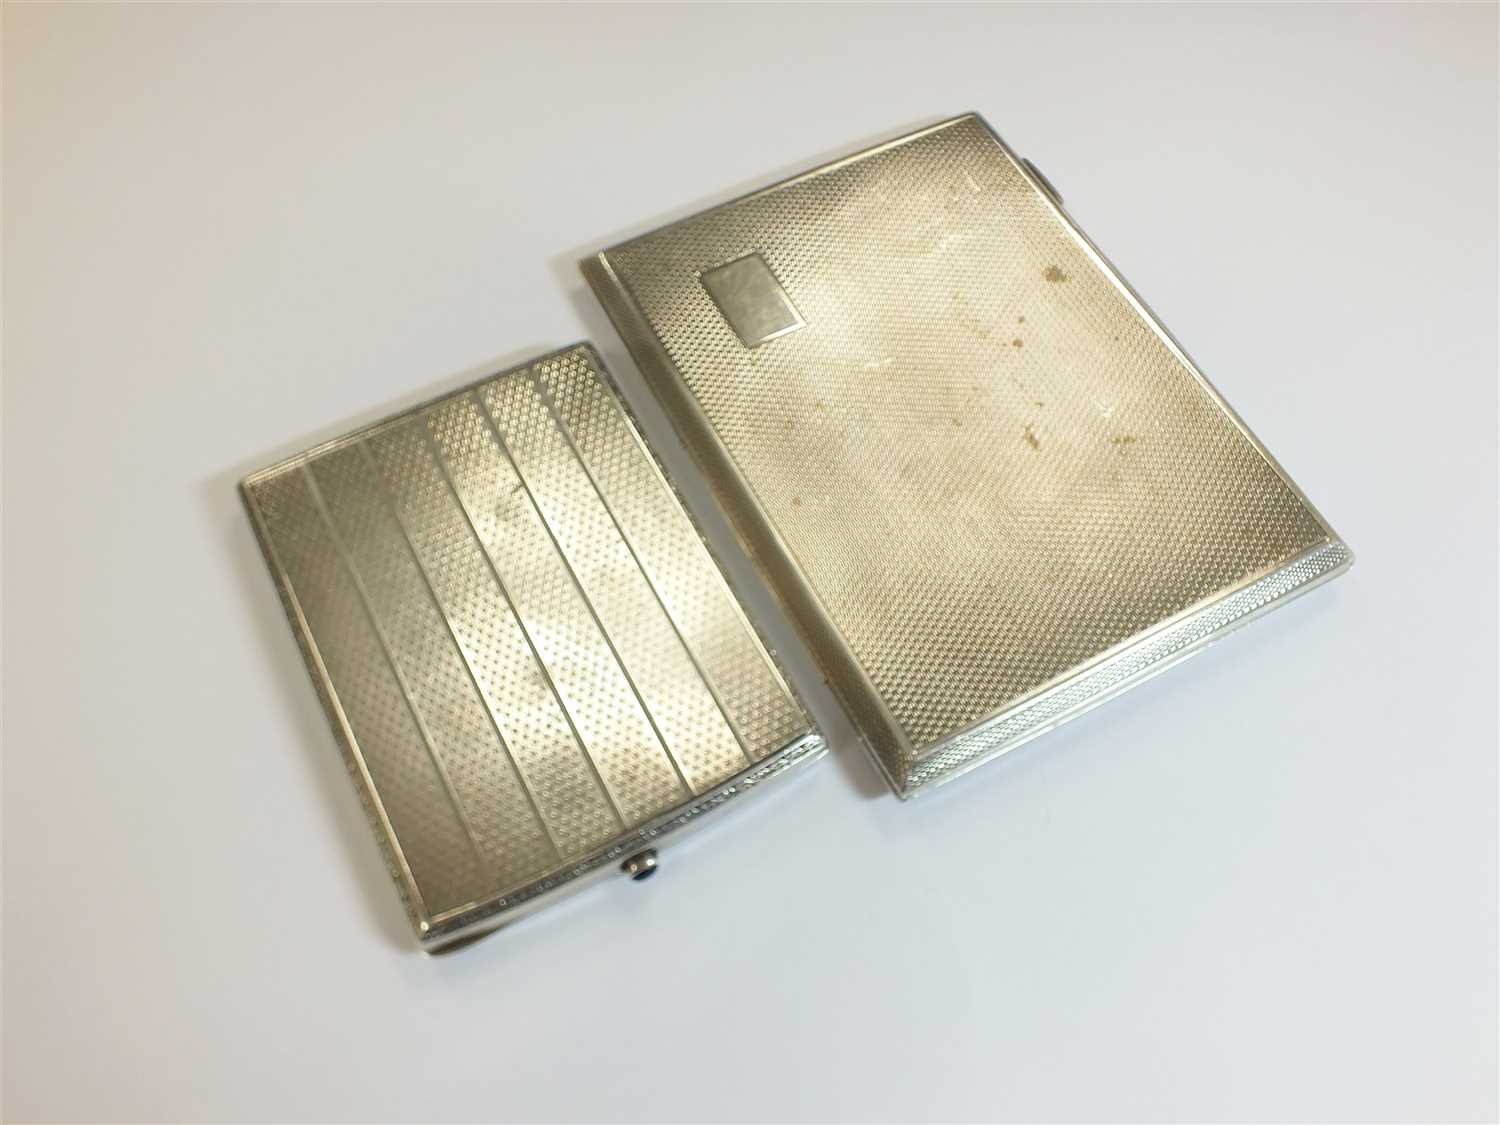 Lot 64 - Two silver cigarette cases